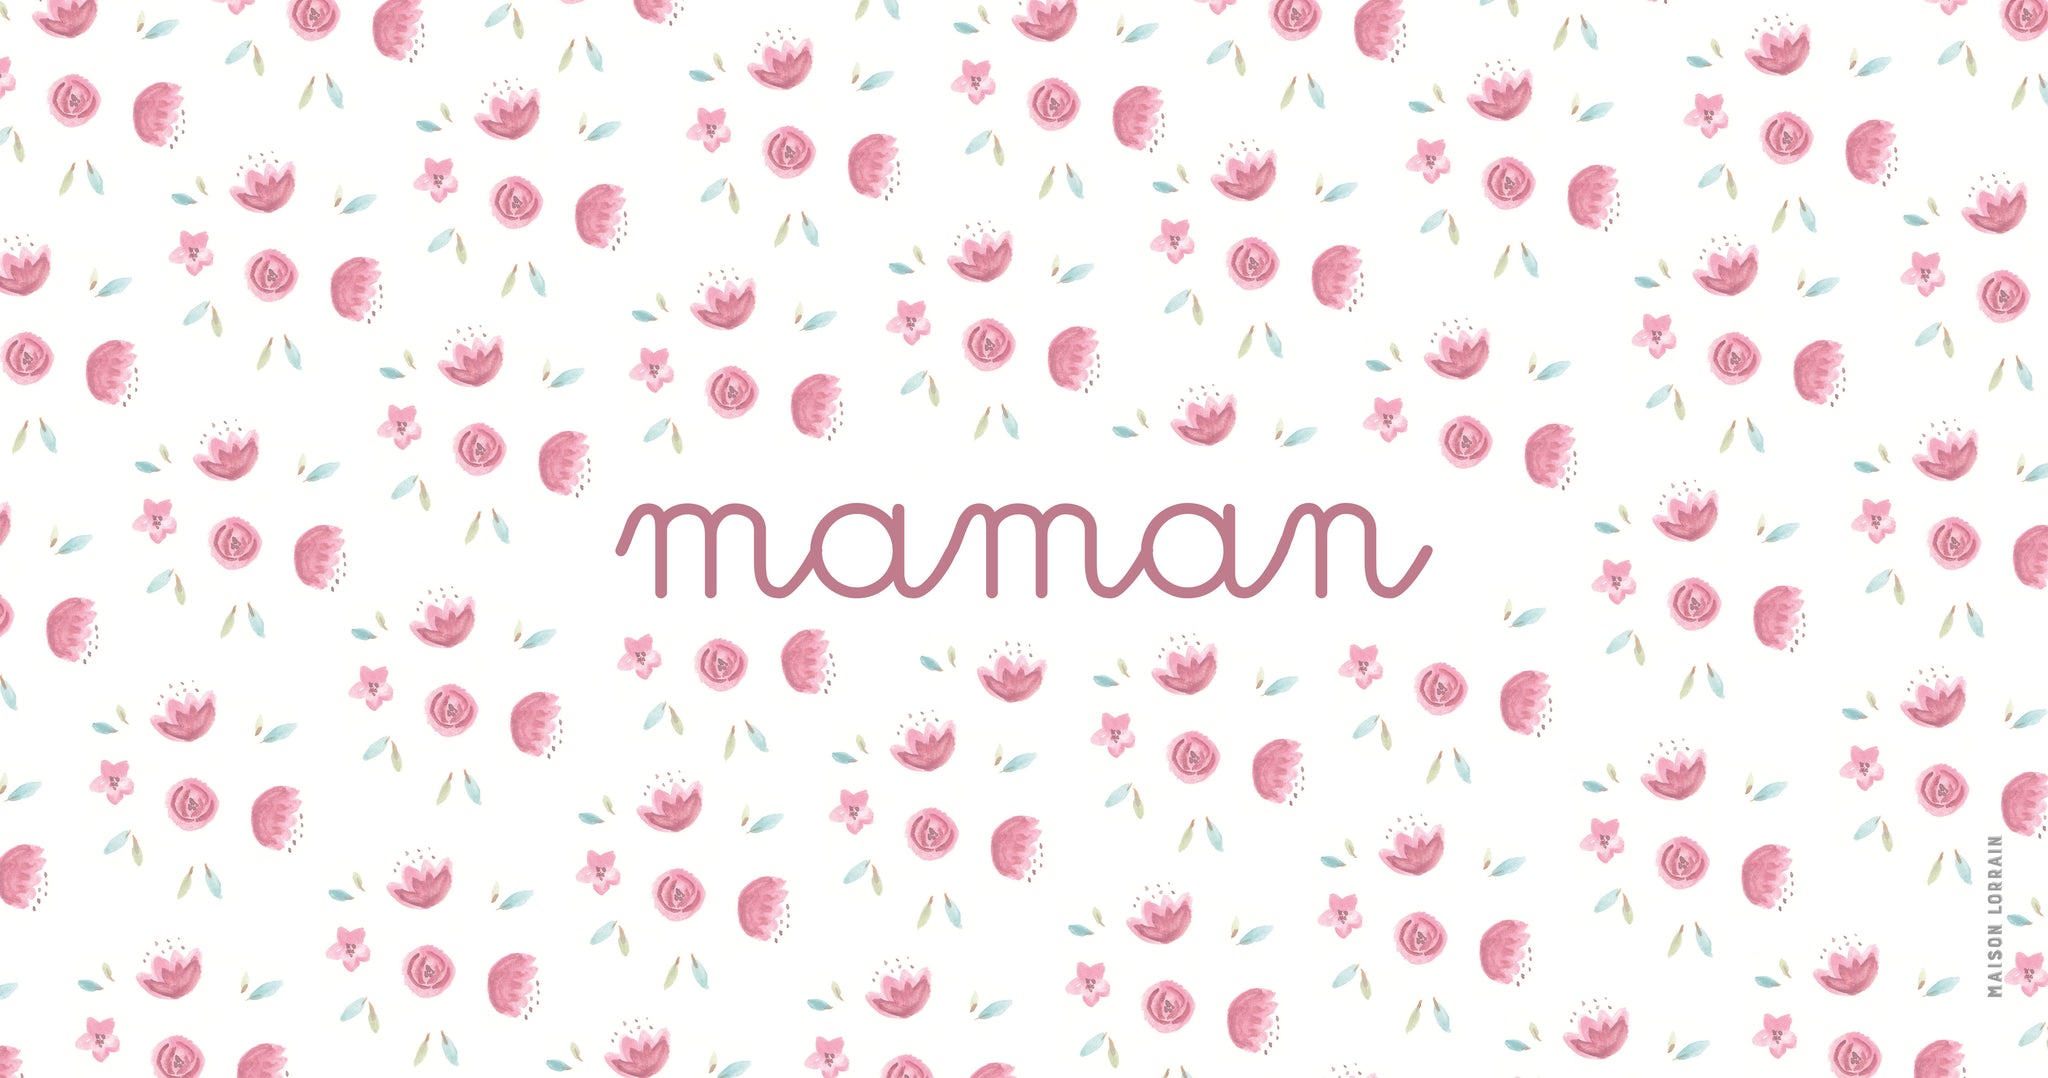 Napperon de Vinyle pour Bébé - Maman Rose - Collection Bébé